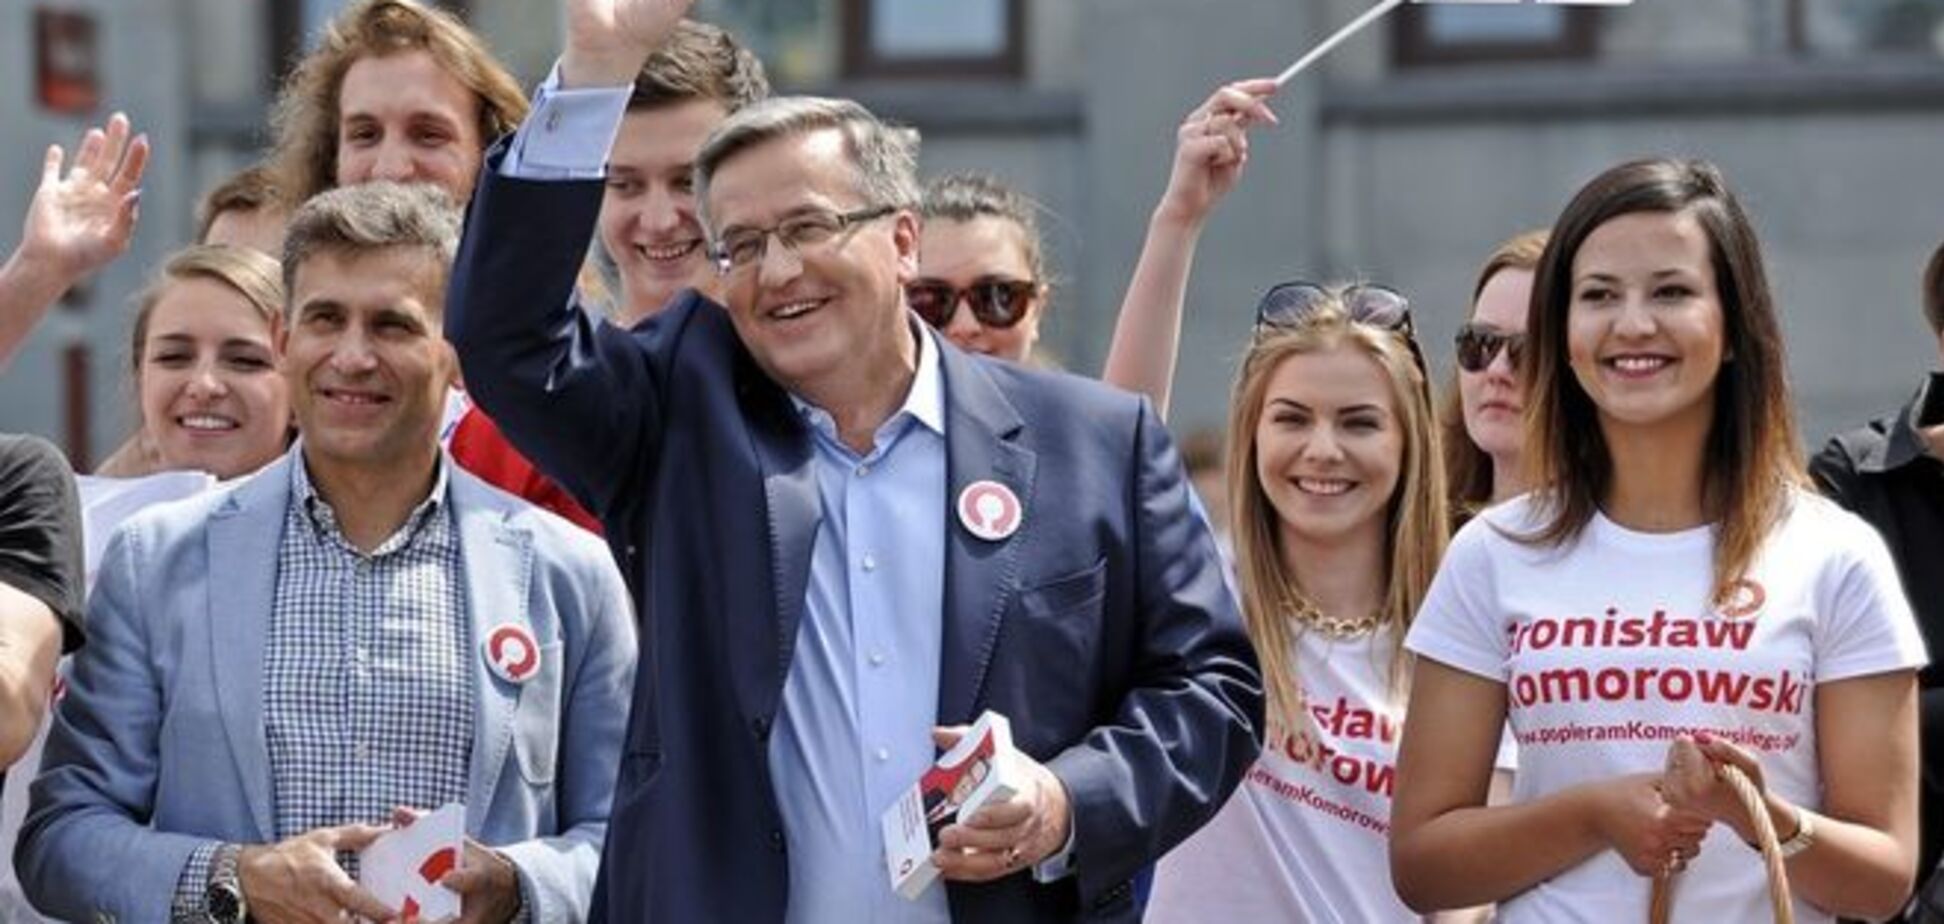 Выборы в Польше: политическое 'землетрясение' и поражение пророссийских сил